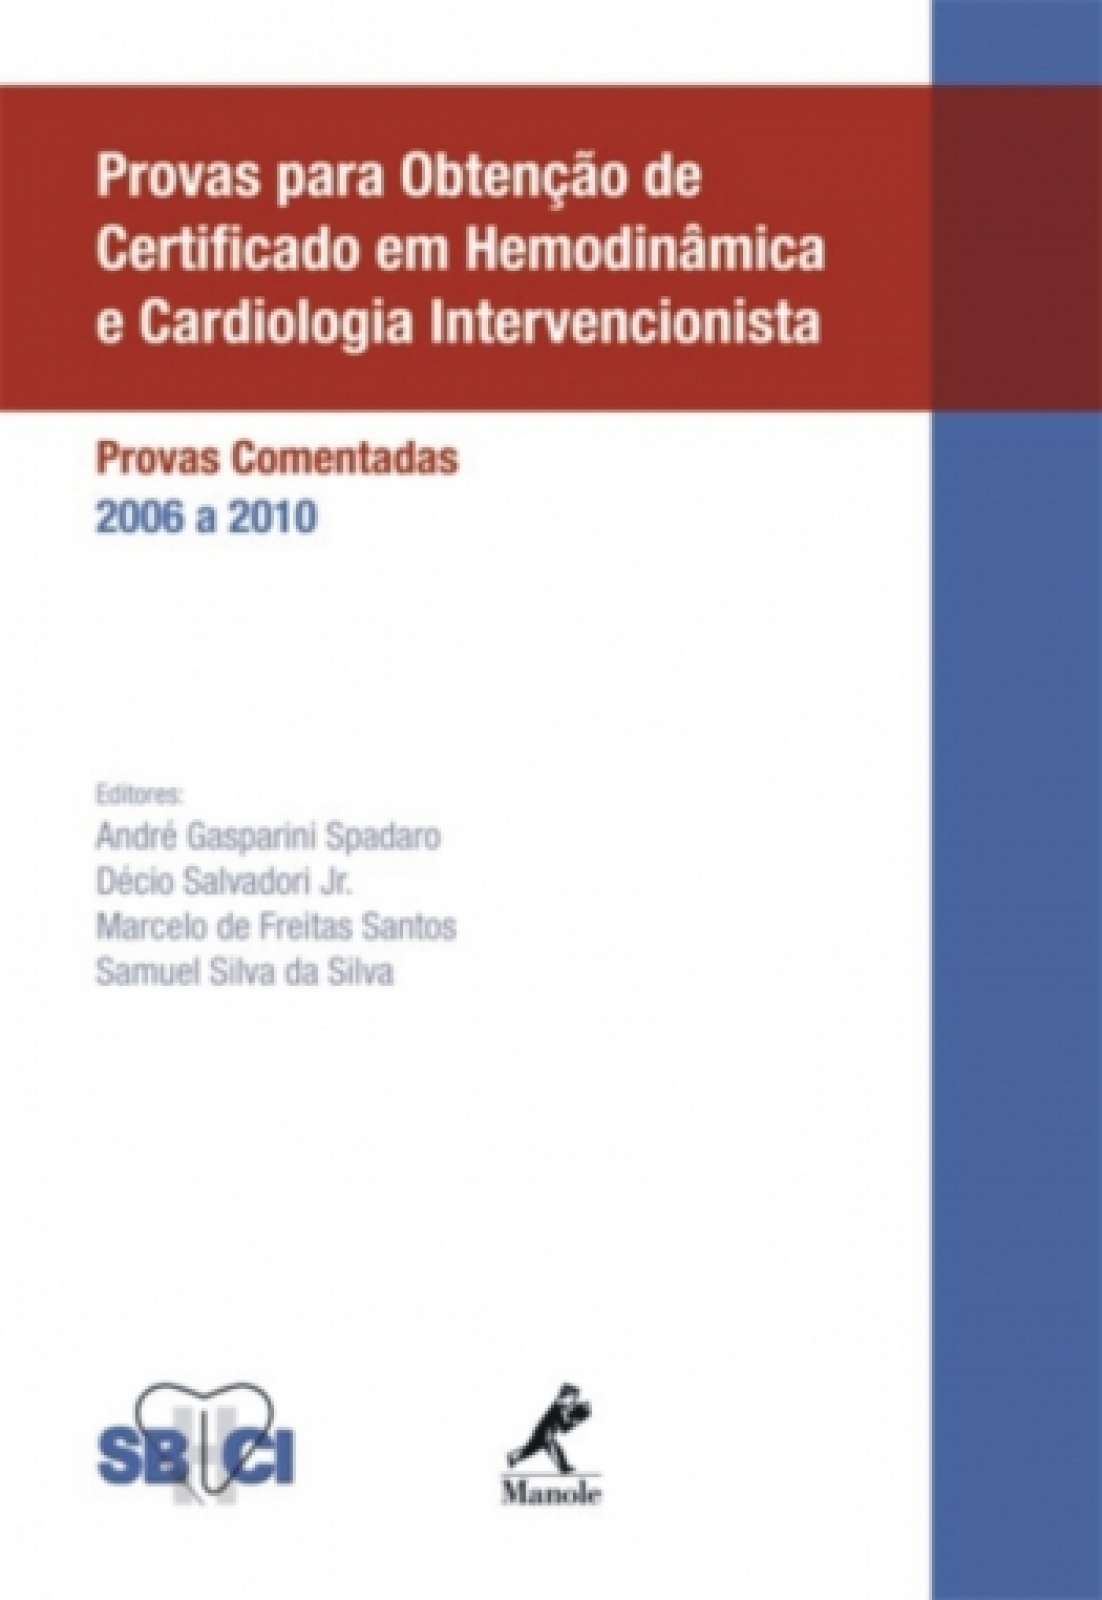 Provas Para Obtenção De Certificado Em Hemodinâmica E Cardiologia Intervencionista - Provas Comentadas 2006 A 2010